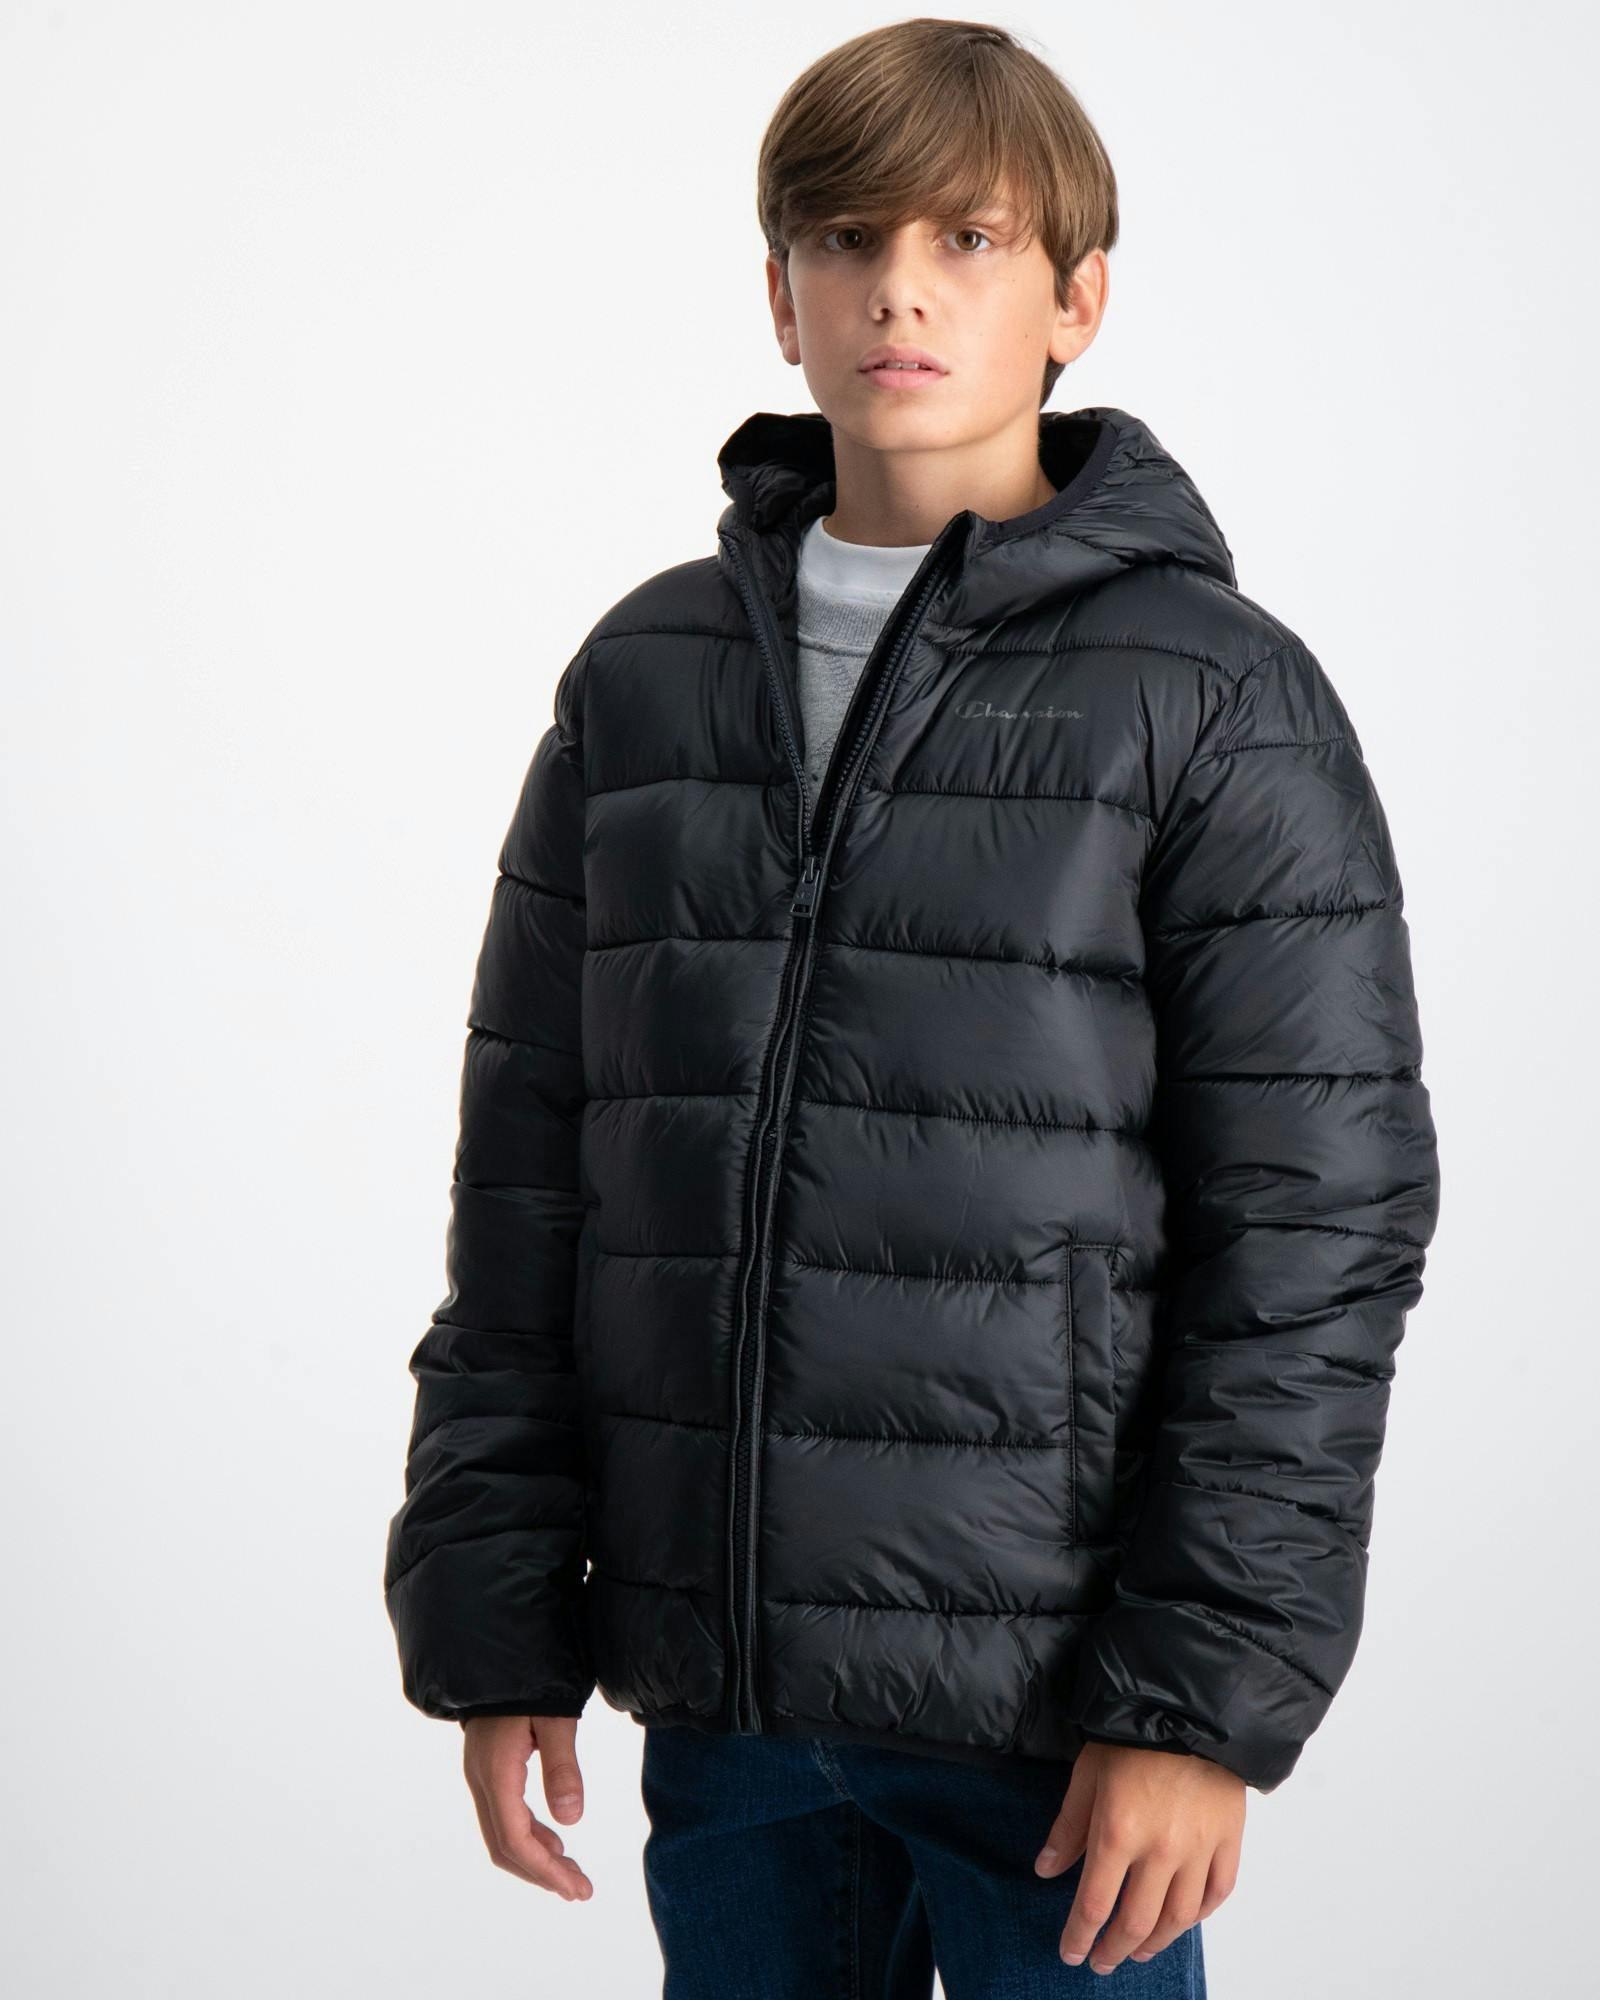 Schwarz Hooded Jacket Jungen für | Kids Brand Store